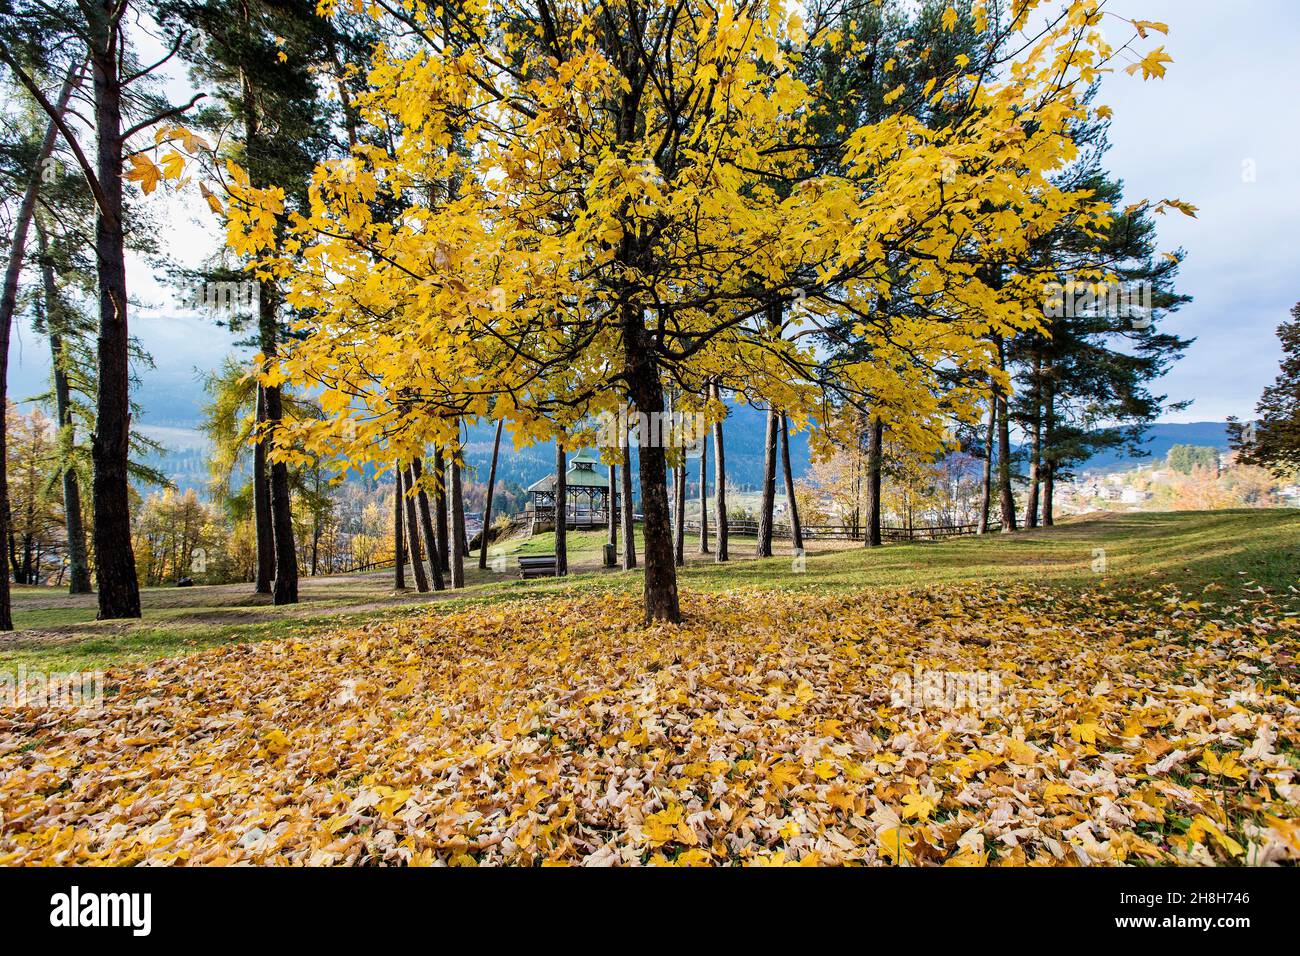 Italia, Trentino Alto Adige, Cavalese, bellissimo sfondo, autunno in un parco con alberi e foglie d'arancia caduta sul terreno Foto © Federico Meneg Foto Stock